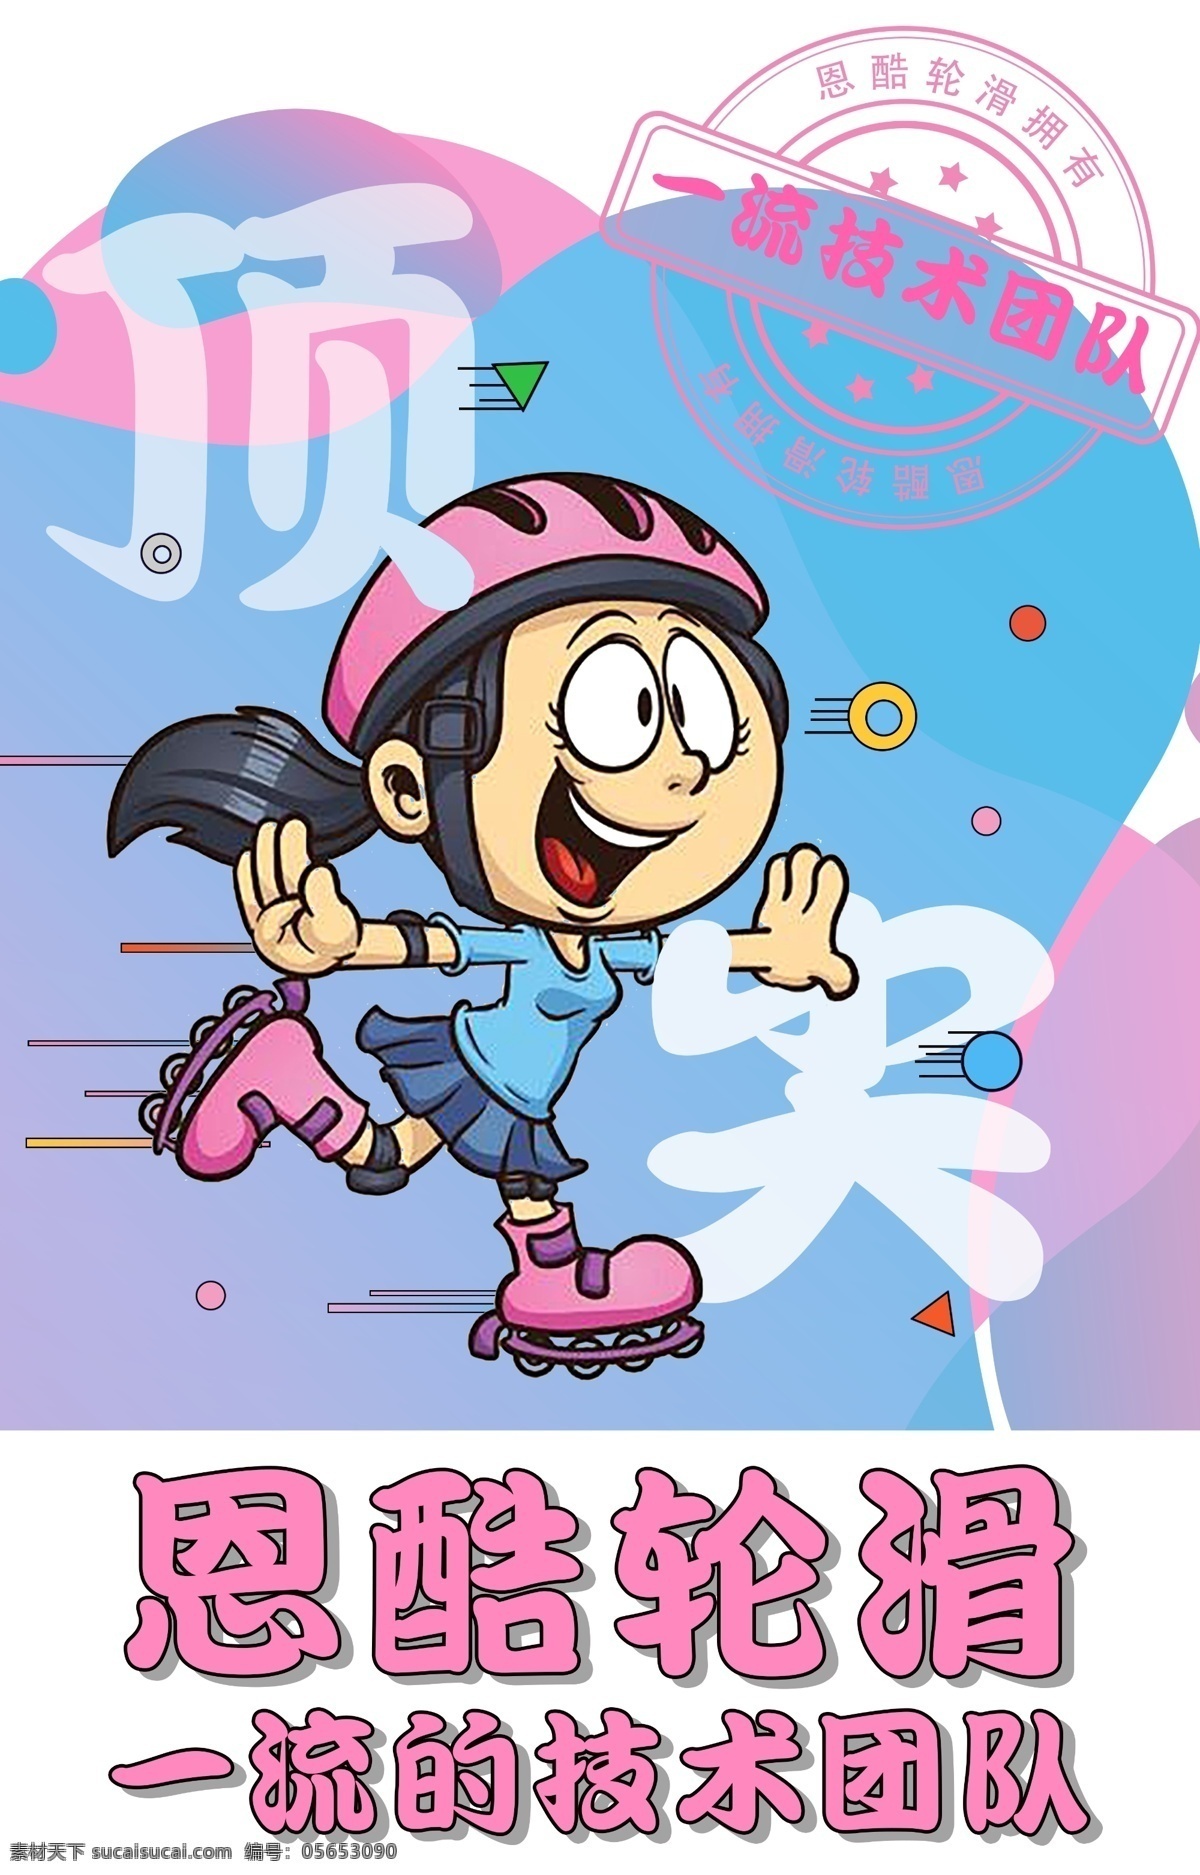 儿童轮滑插画 儿童 轮滑 插画 运动海报 活力 招贴设计